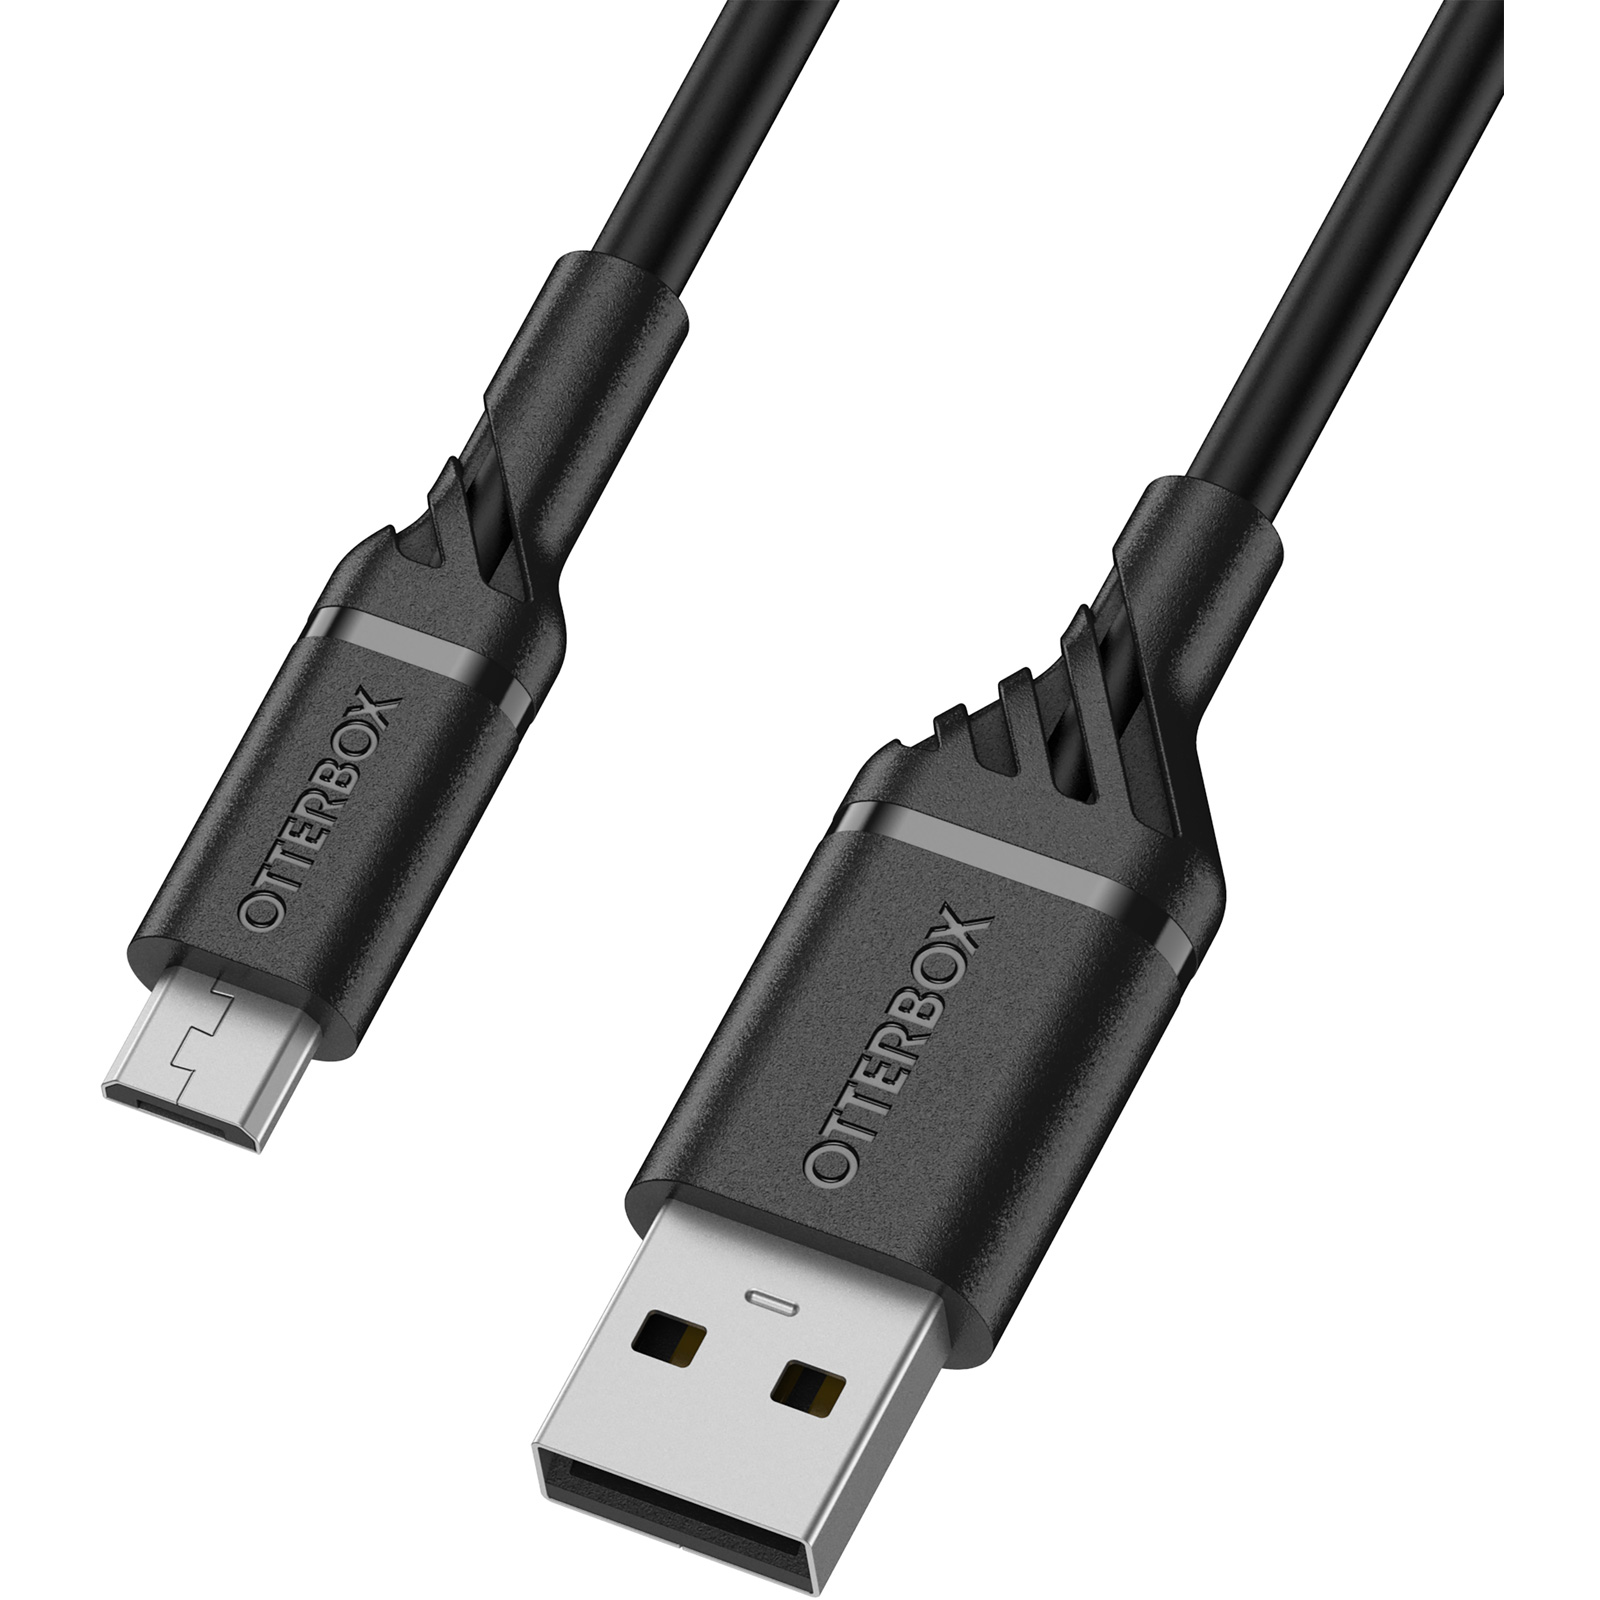 Câble d'imprimante USB 3.0 On Earz Mobile Gear 1.8 m Noir - Câbles